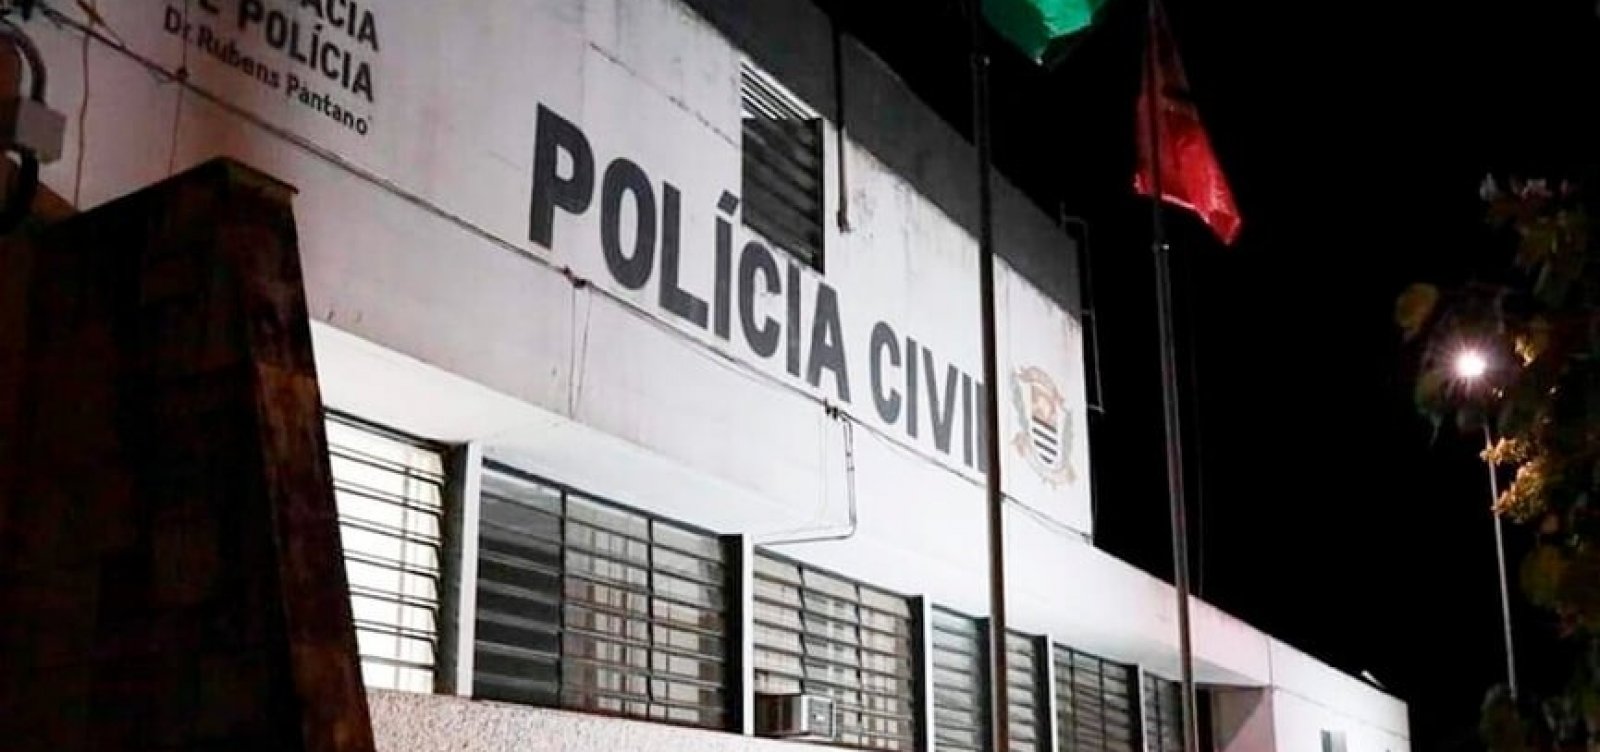 Polícia abre inquérito para buscar 12 suspeitos de estupro coletivo em SP